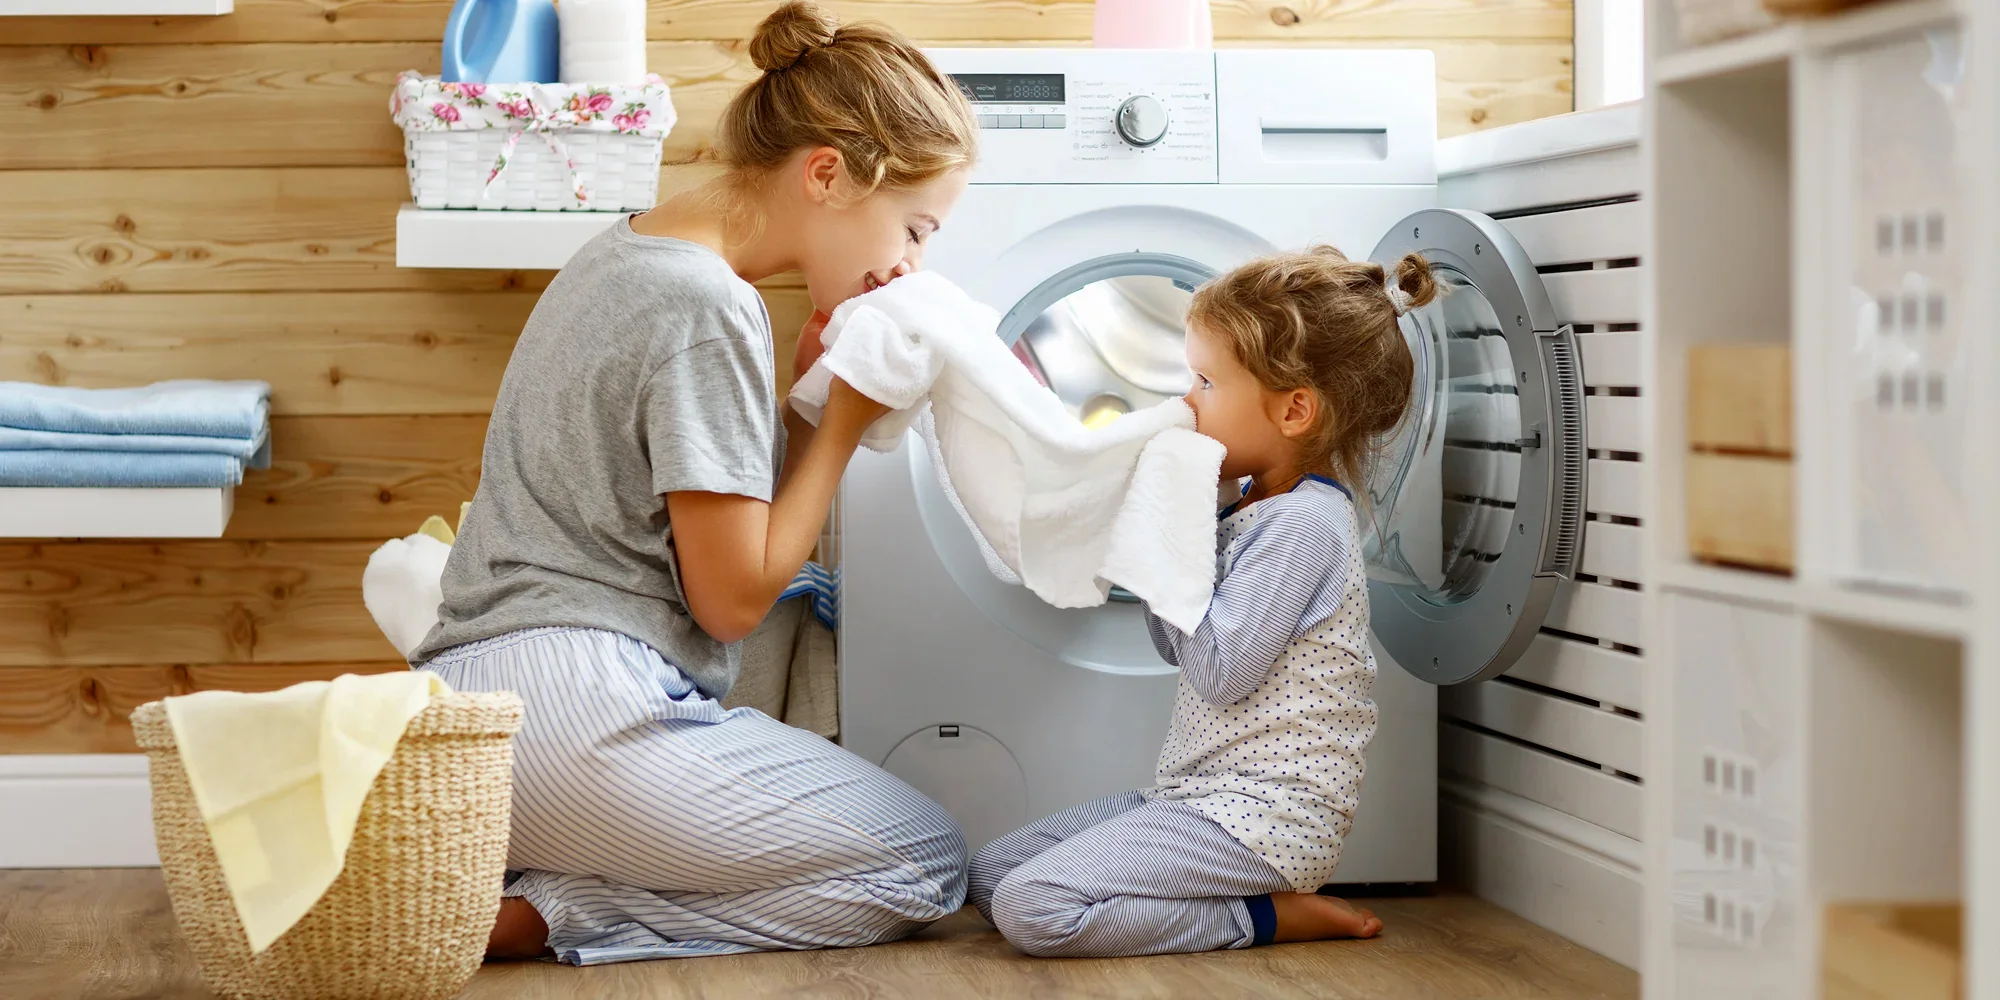 Phân chia trách nhiệm giặt ủi Dạy trẻ mang đồ giặt vào máy giặt Cây vân sam / Leticia Almeida Cả bạn và gia đình bạn sẽ được hưởng lợi từ việc biết cách giặt giũ đúng cách. Thời điểm tốt nhất để bắt đầu dạy học là khi trẻ mới biết đi và muốn làm mọi việc bạn đang làm. Trẻ mới biết đi có thể mang quần áo đến phòng giặt và thậm chí có thể bắt đầu phân loại quần áo theo màu sắc. Khi trẻ học tiểu học, chúng có thể học cách sử dụng máy giặt và máy sấy. Hãy nhớ rằng, họ có thể sử dụng mọi mặt hàng điện tử khác trên thị trường. Bắt đầu với những món đồ cơ bản như khăn trải giường và khăn tắm, sau đó chuyển sang những món đồ khó hơn như các loại vải khác nhau và tẩy vết bẩn. Mọi thanh thiếu niên nên biết cách giặt giũ và đó là kỹ năng các em sẽ cần ở trường đại học hoặc khi tự mình ra ngoài.